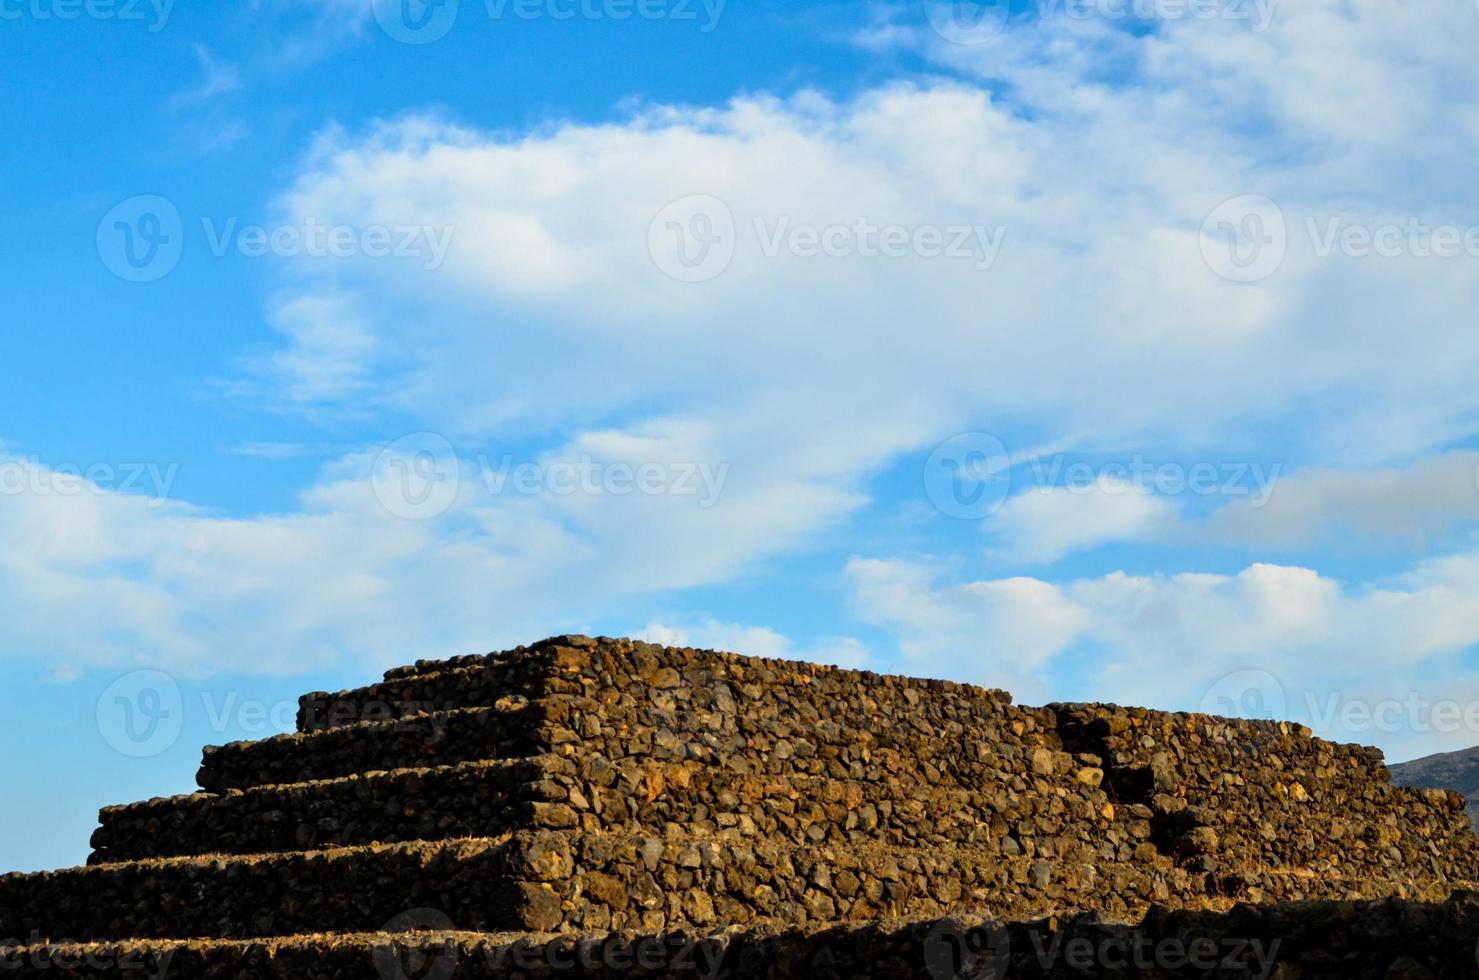 gammal pyramid tillverkad av stenar foto